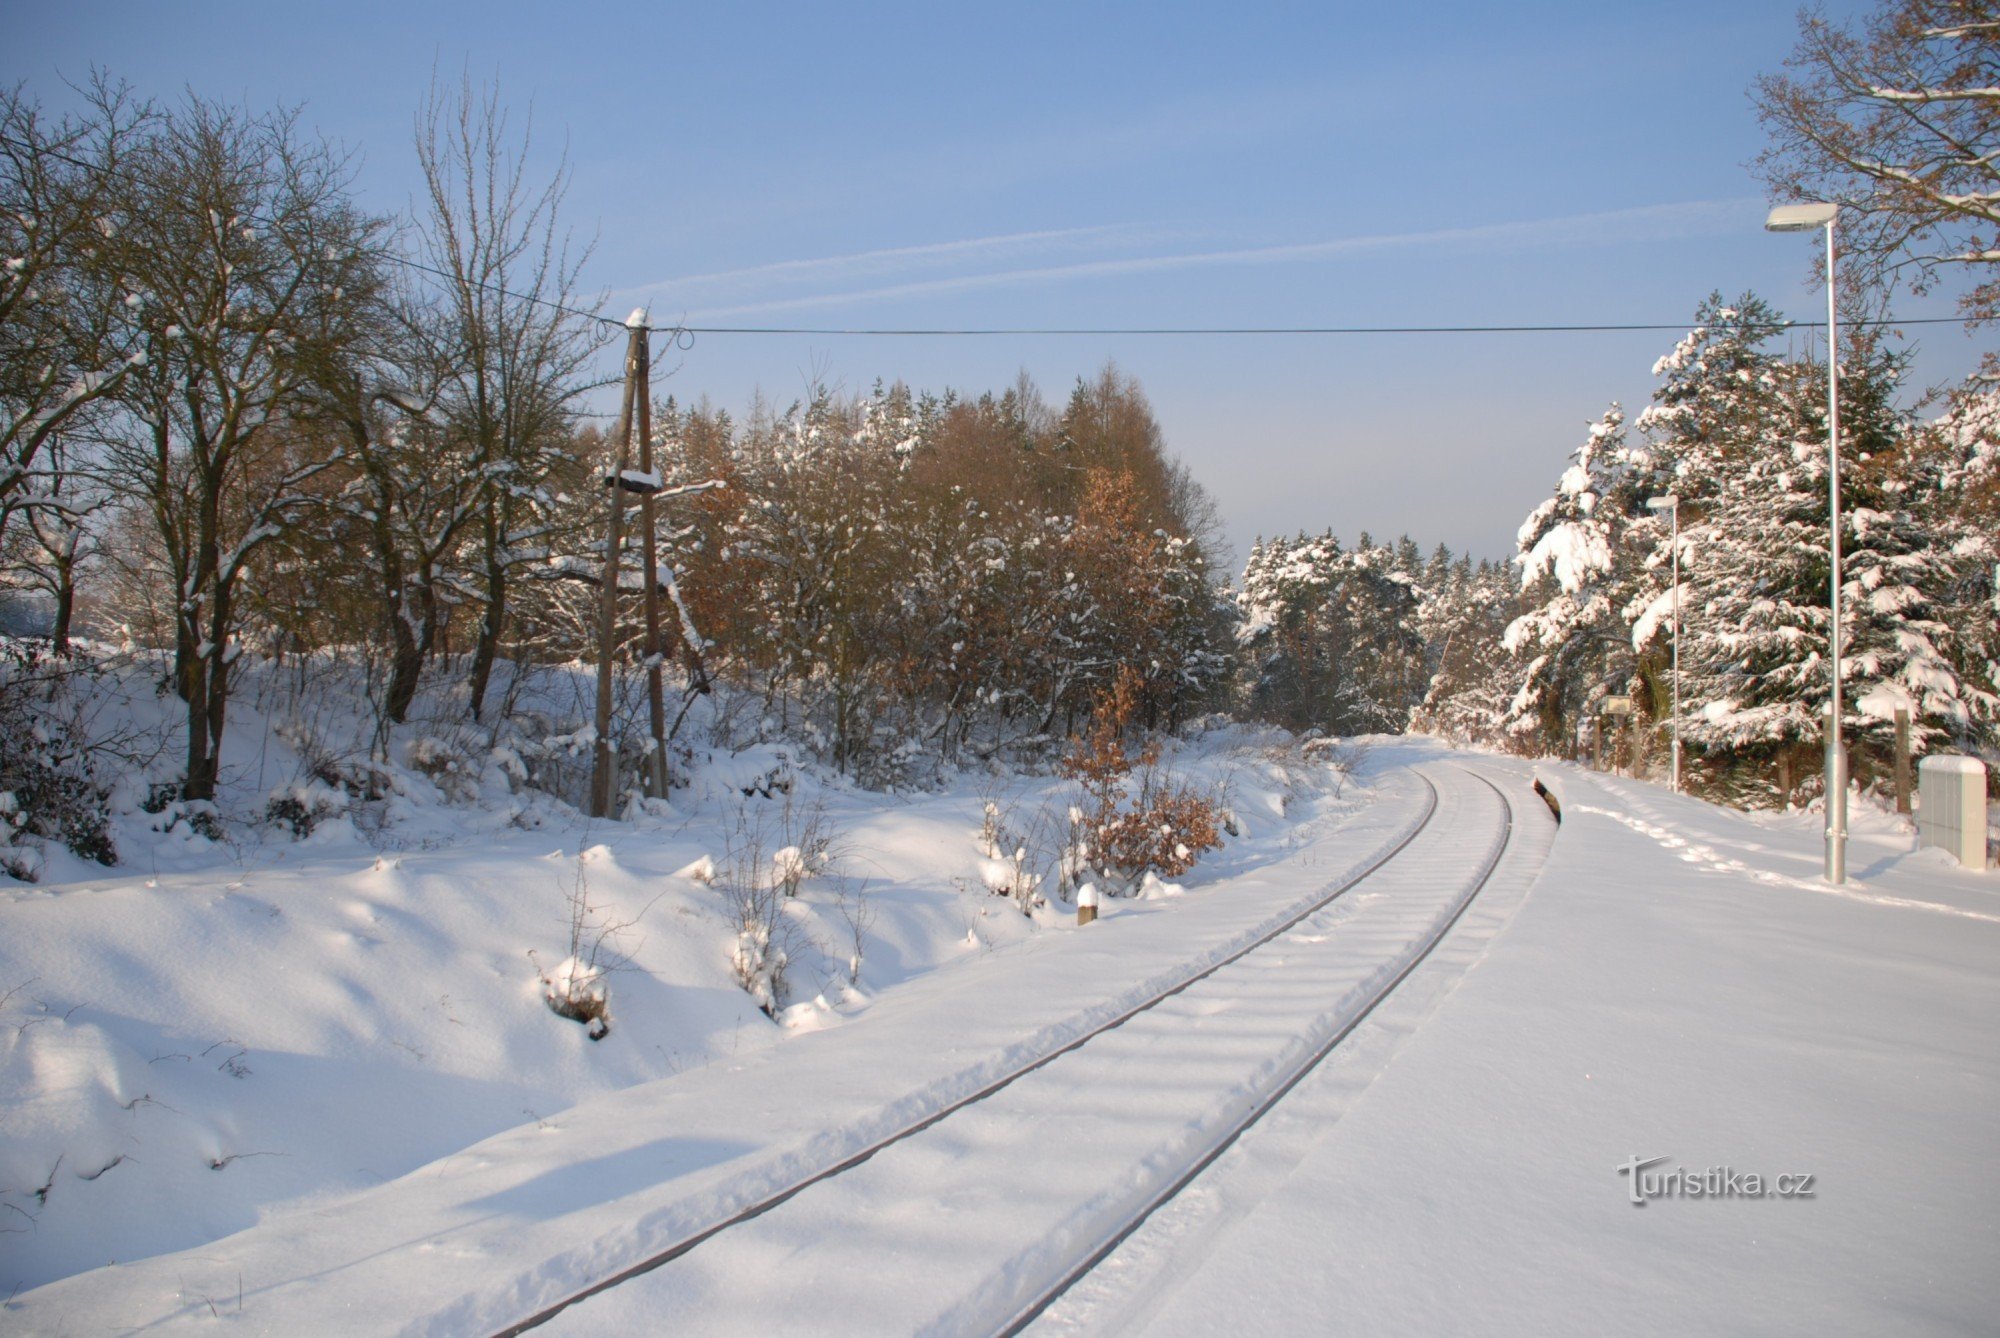 binari in direzione di Bezdružice sotto la neve, stazione ferroviaria di Blahousty